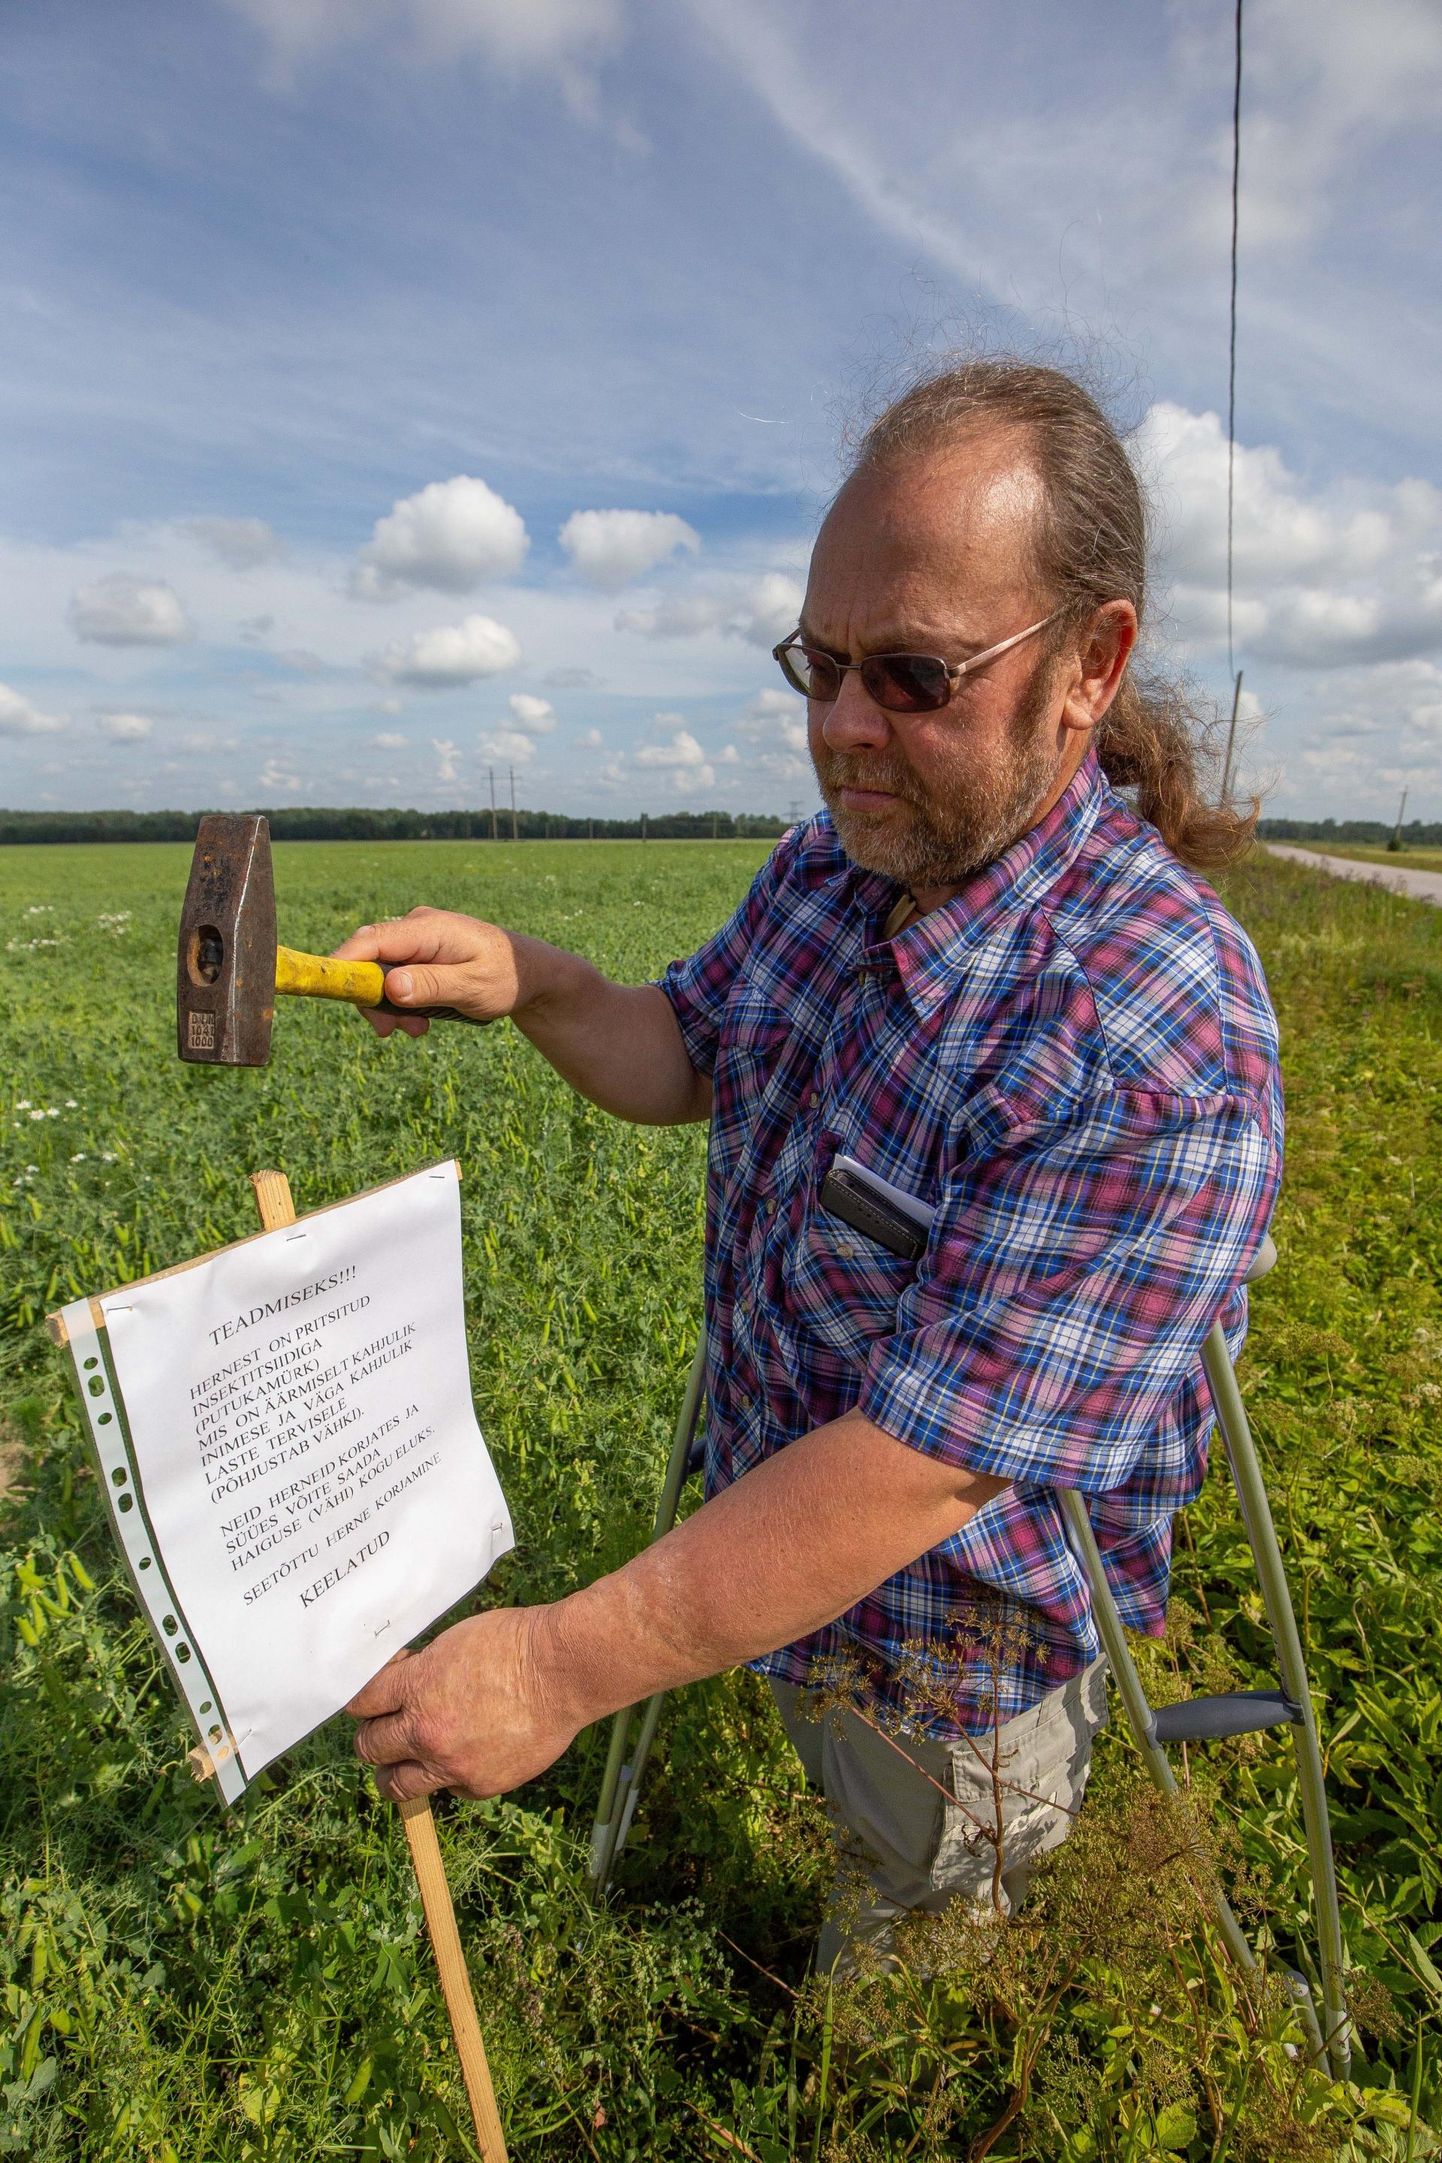 Eelmise aasta juulis pani Koit Teder hernekrattidele hoiatussildi põllu äärde. FOTO: Dmitri Kotjuh/Järva Teataja